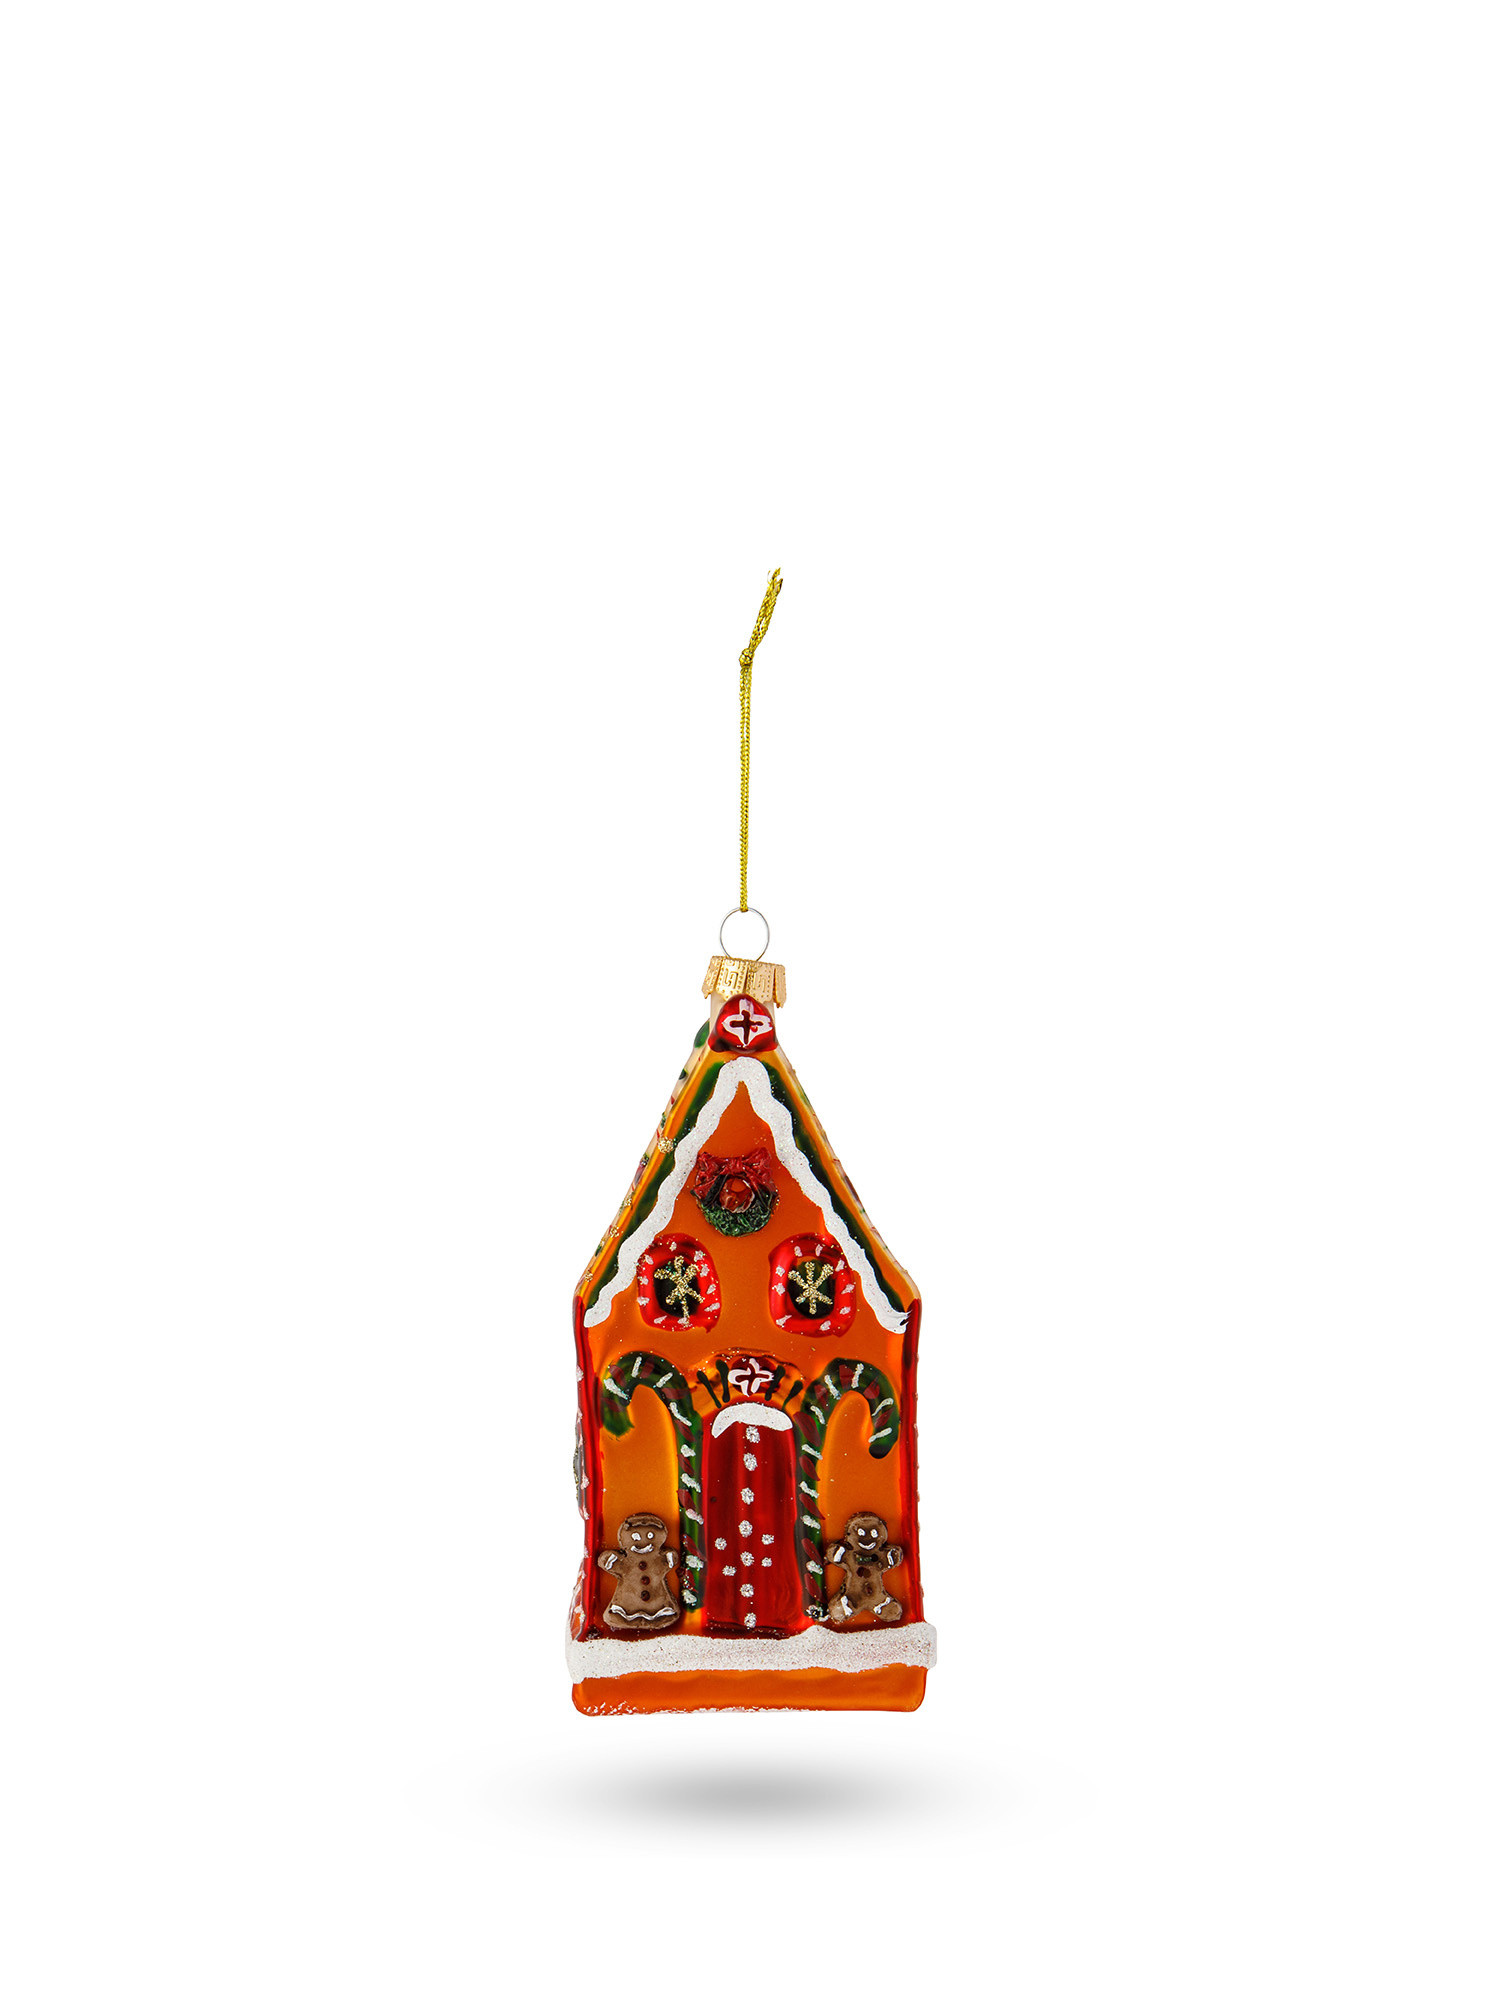 Addobbo albero casetta dolci in vetro decorato a mano, Multicolor, large image number 0